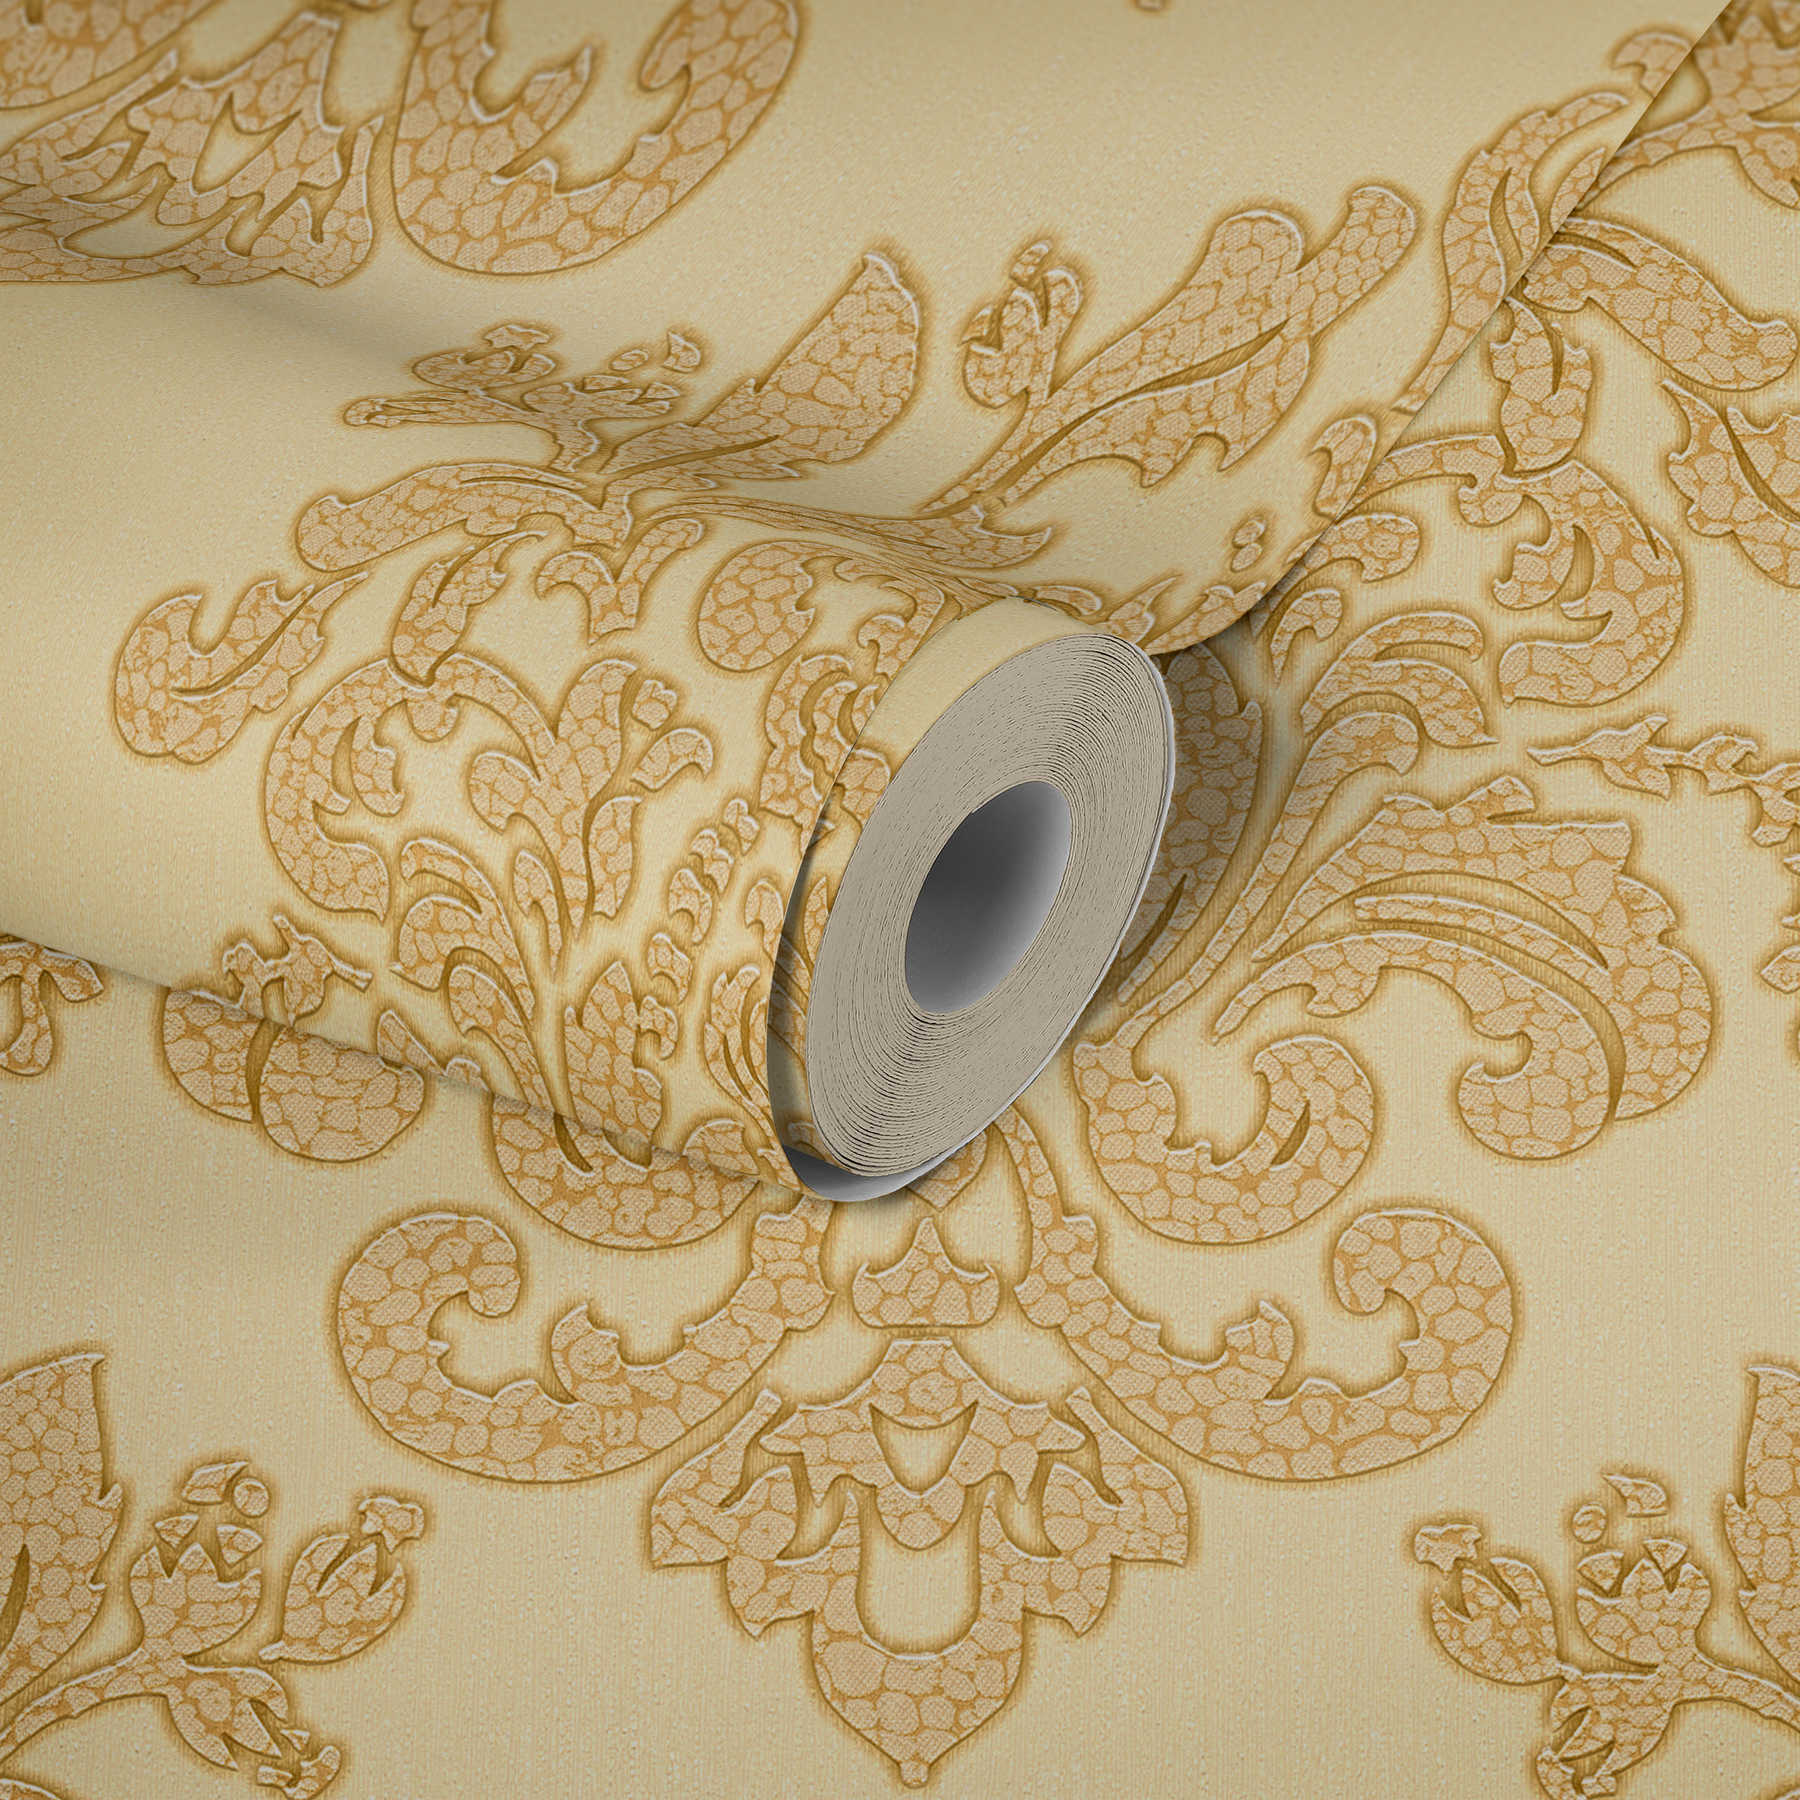             Papel pintado no tejido ornamental dorado con efecto craquelado - metálico
        